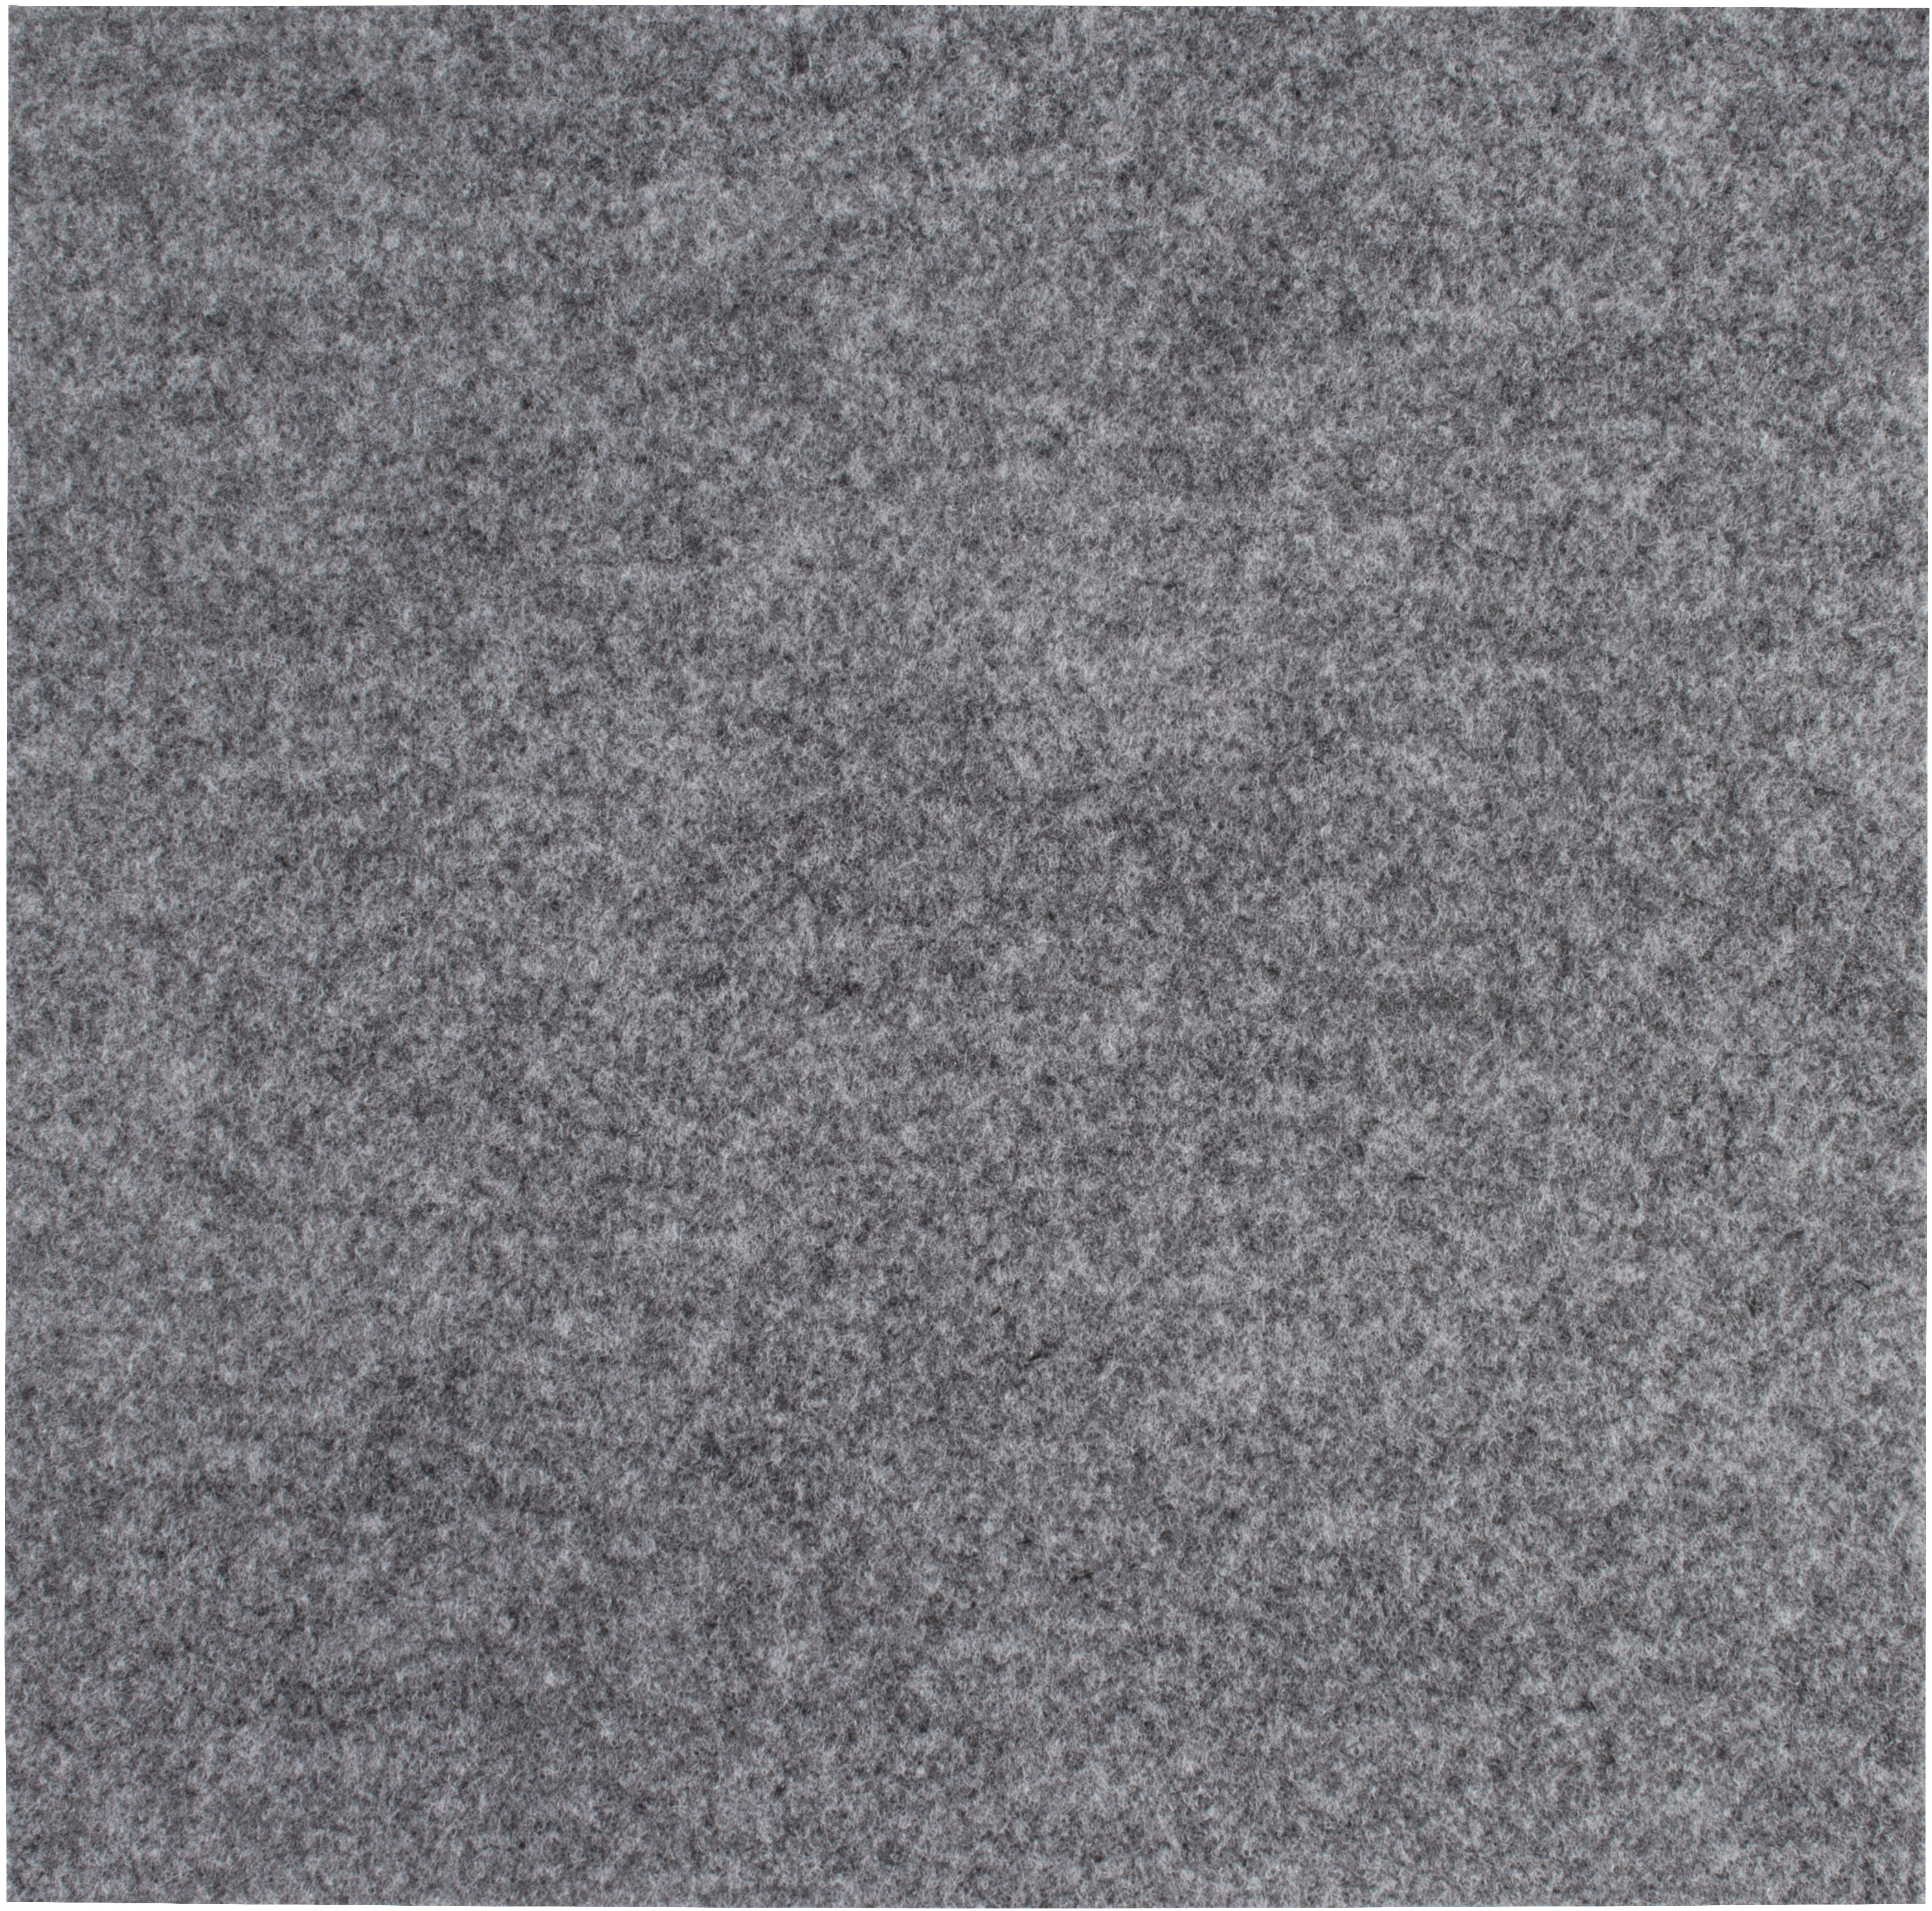 Andiamo Teppichfliese selbstklebend Grau 40 cm x 40 cm kaufen bei OBI